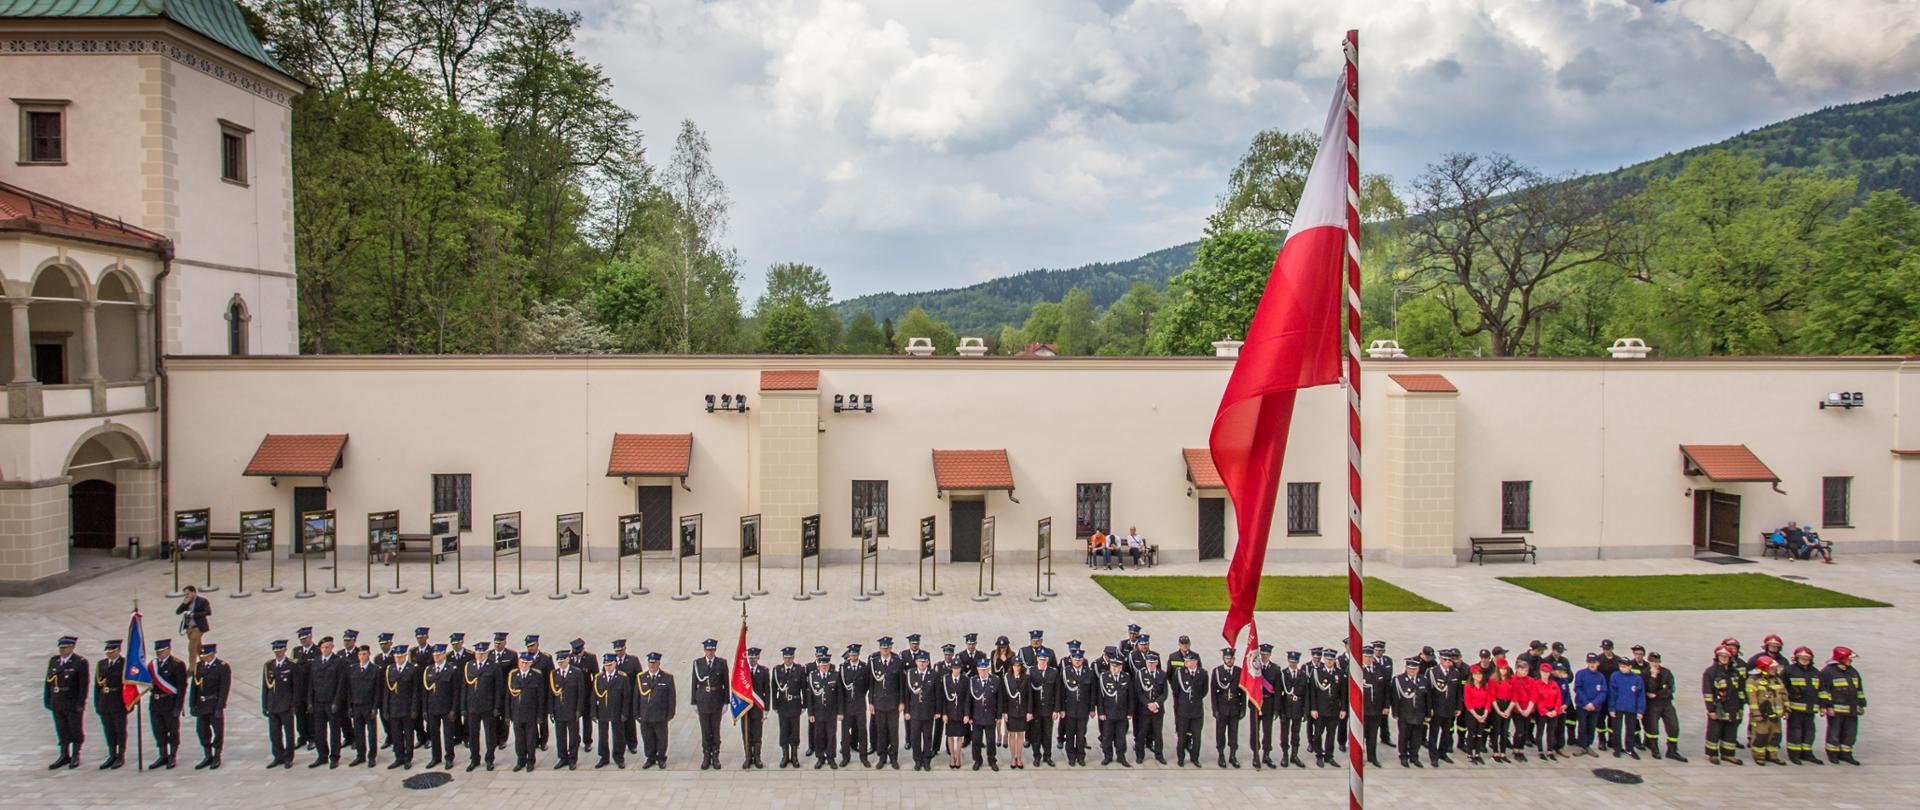 Zdjęcie przedstawia zbiórkę pododdziałów Państwowej Straży Pożarnej oraz Ochotniczej Straży Pożarnej na dziedzińcu zamku suskiego. 